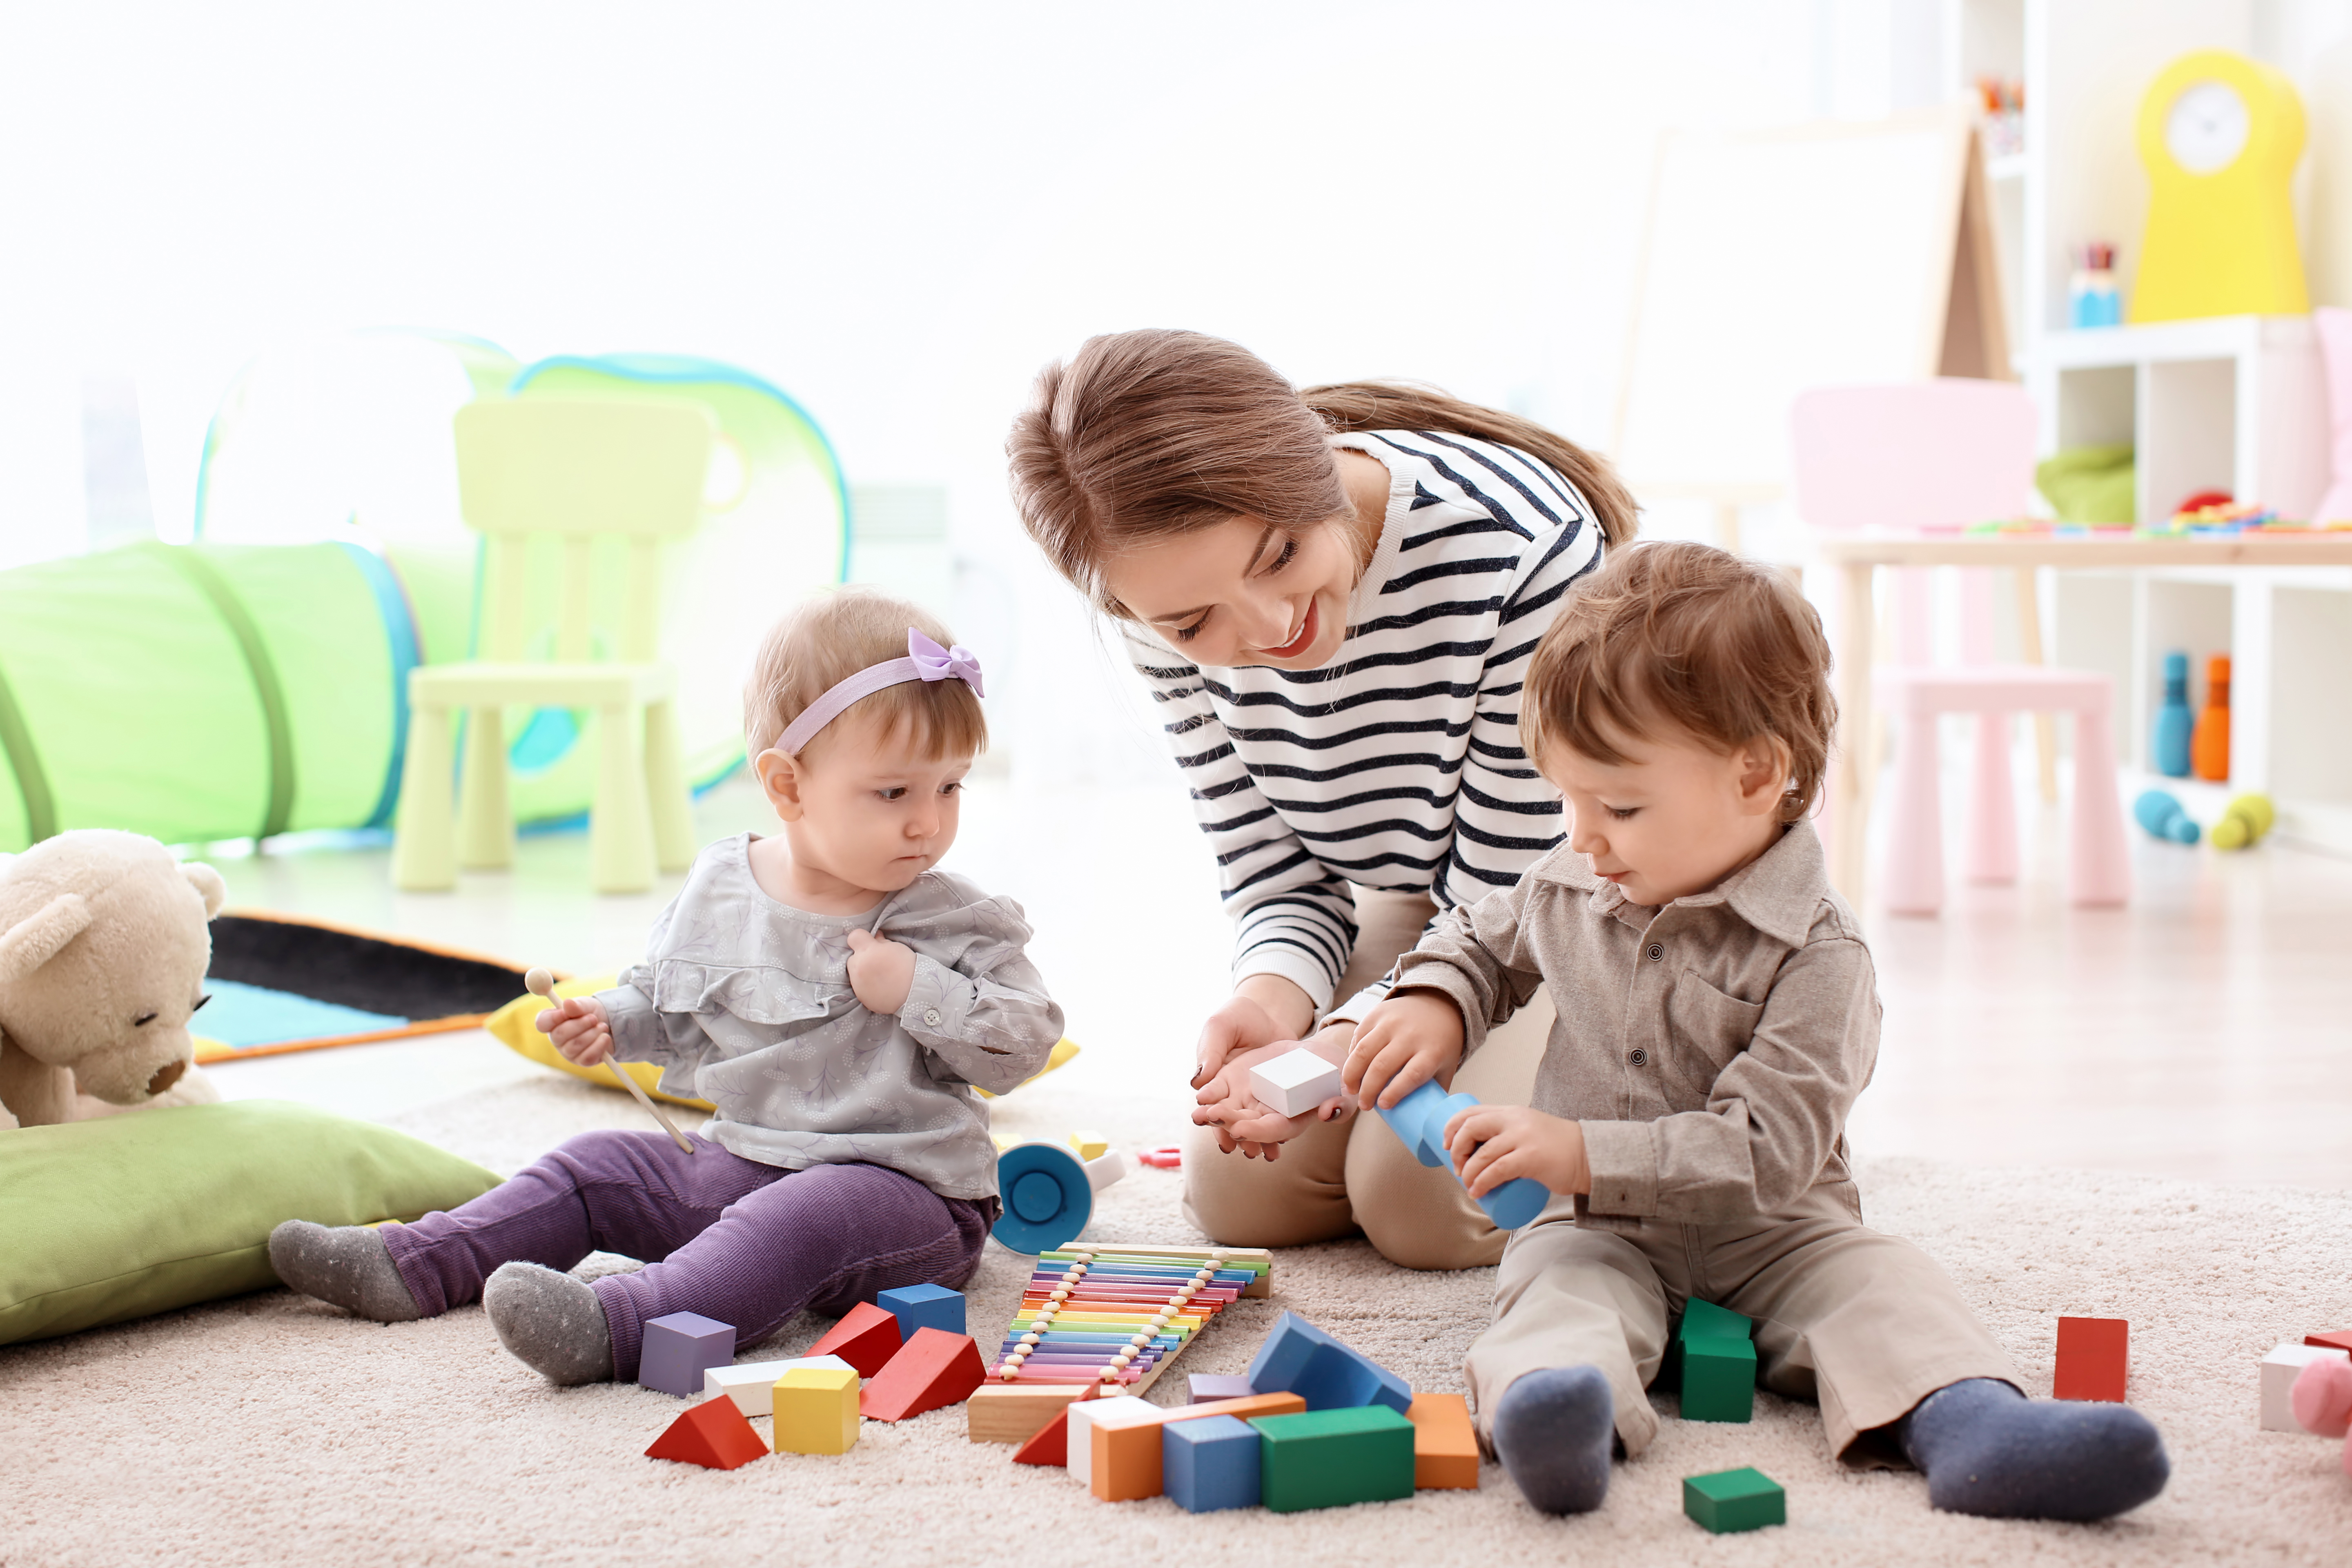 Une jeune femme assiste deux bambins pendant la récréation | Source : Shutterstock